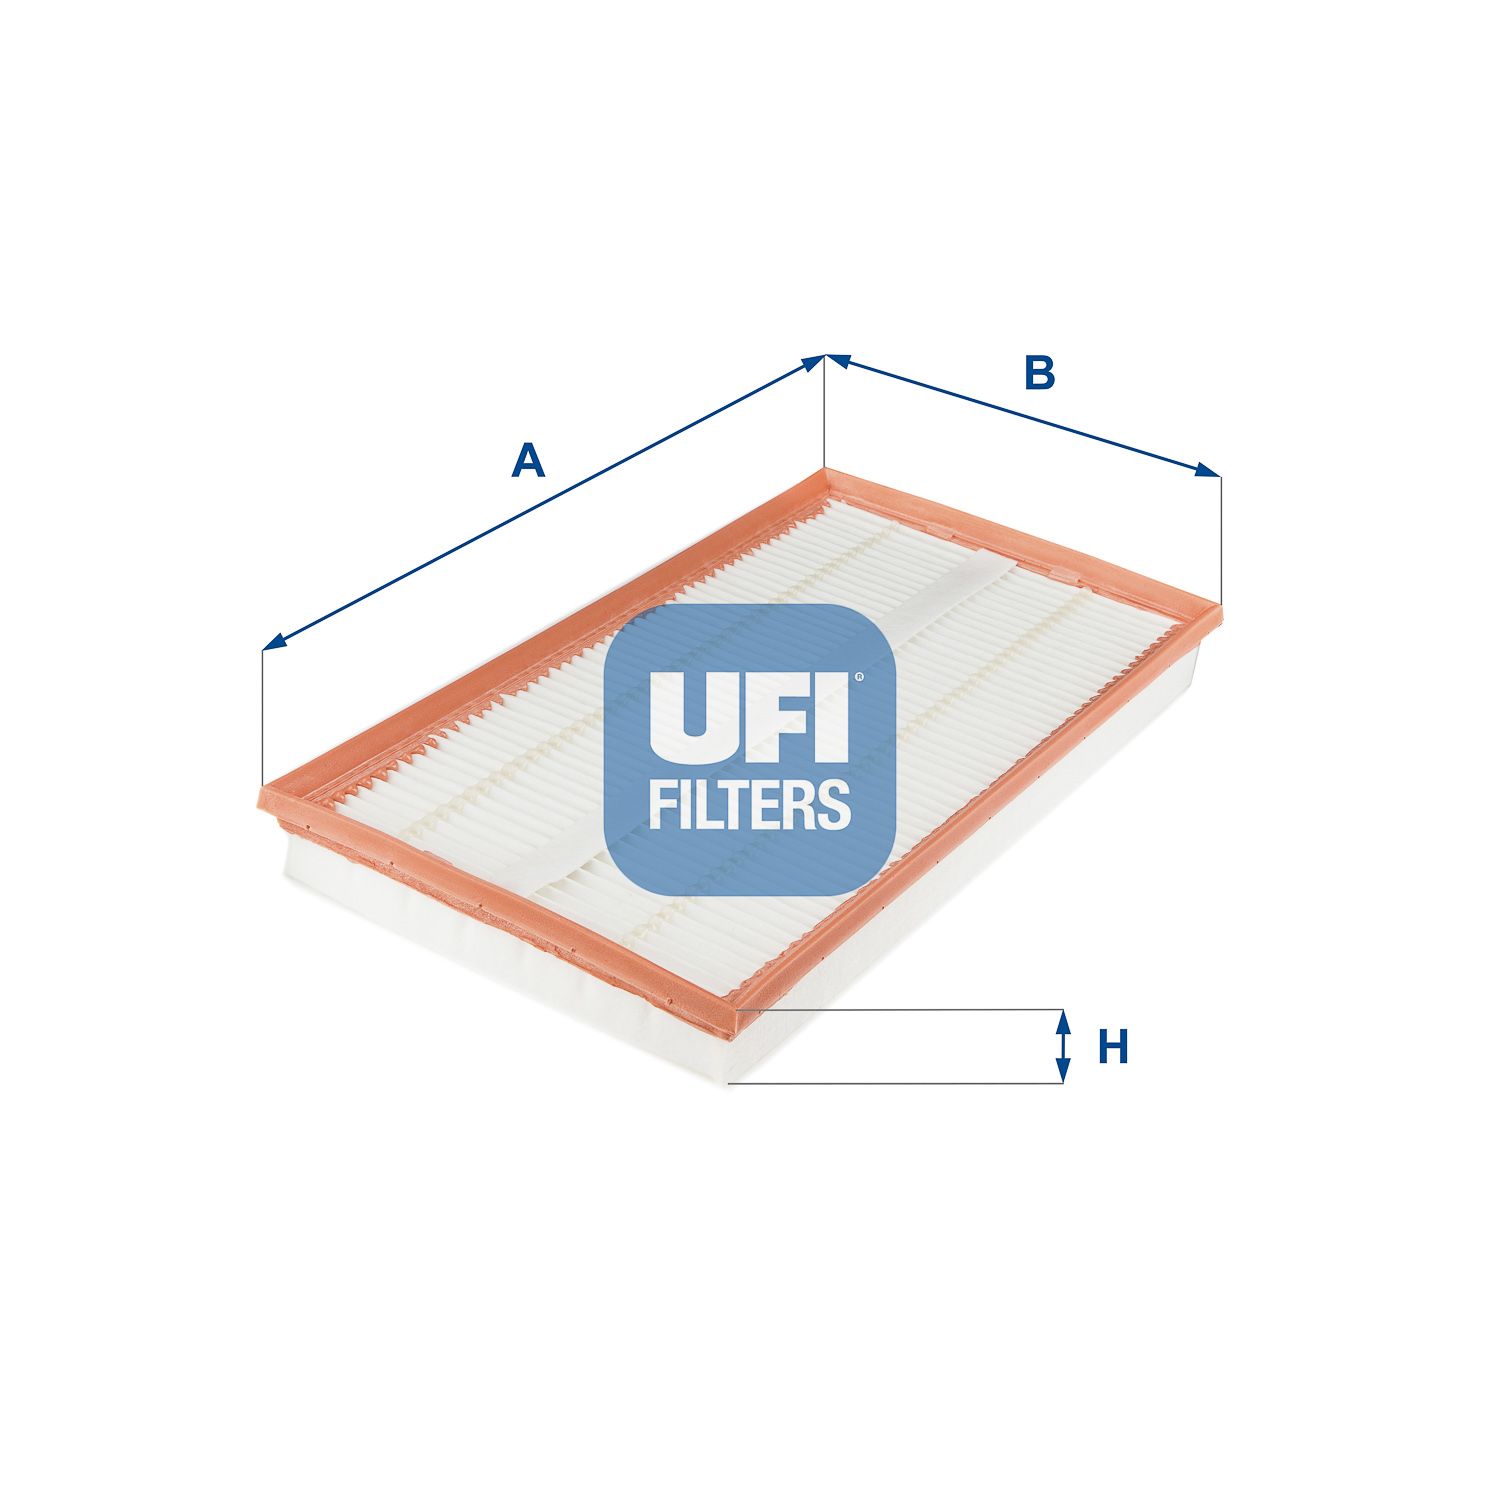 Vzduchový filtr UFI 30.658.00